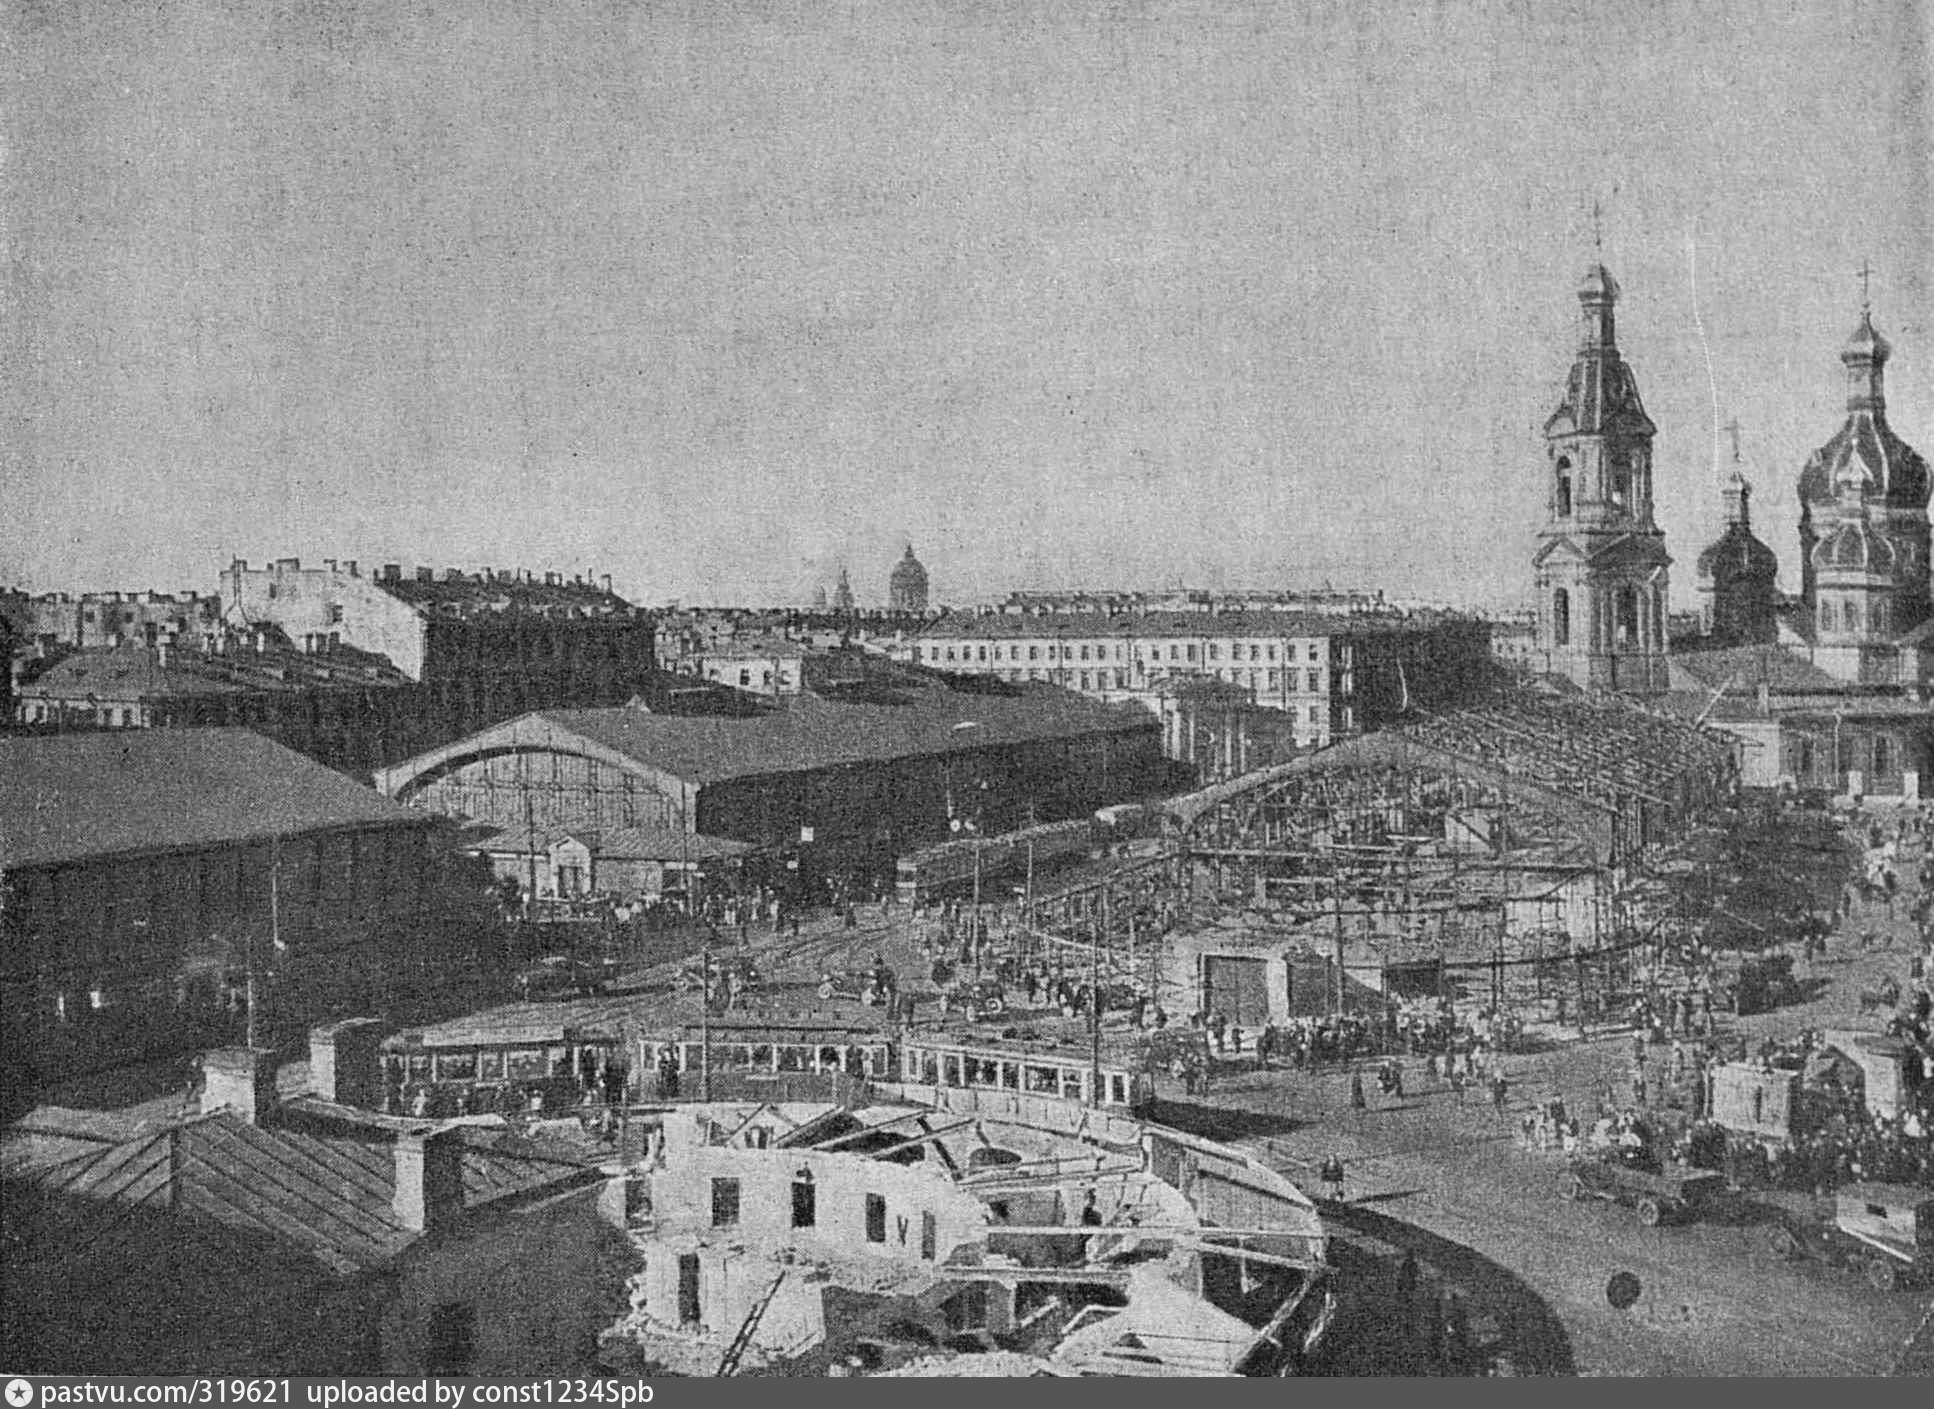 сенная площадь фото 19 века